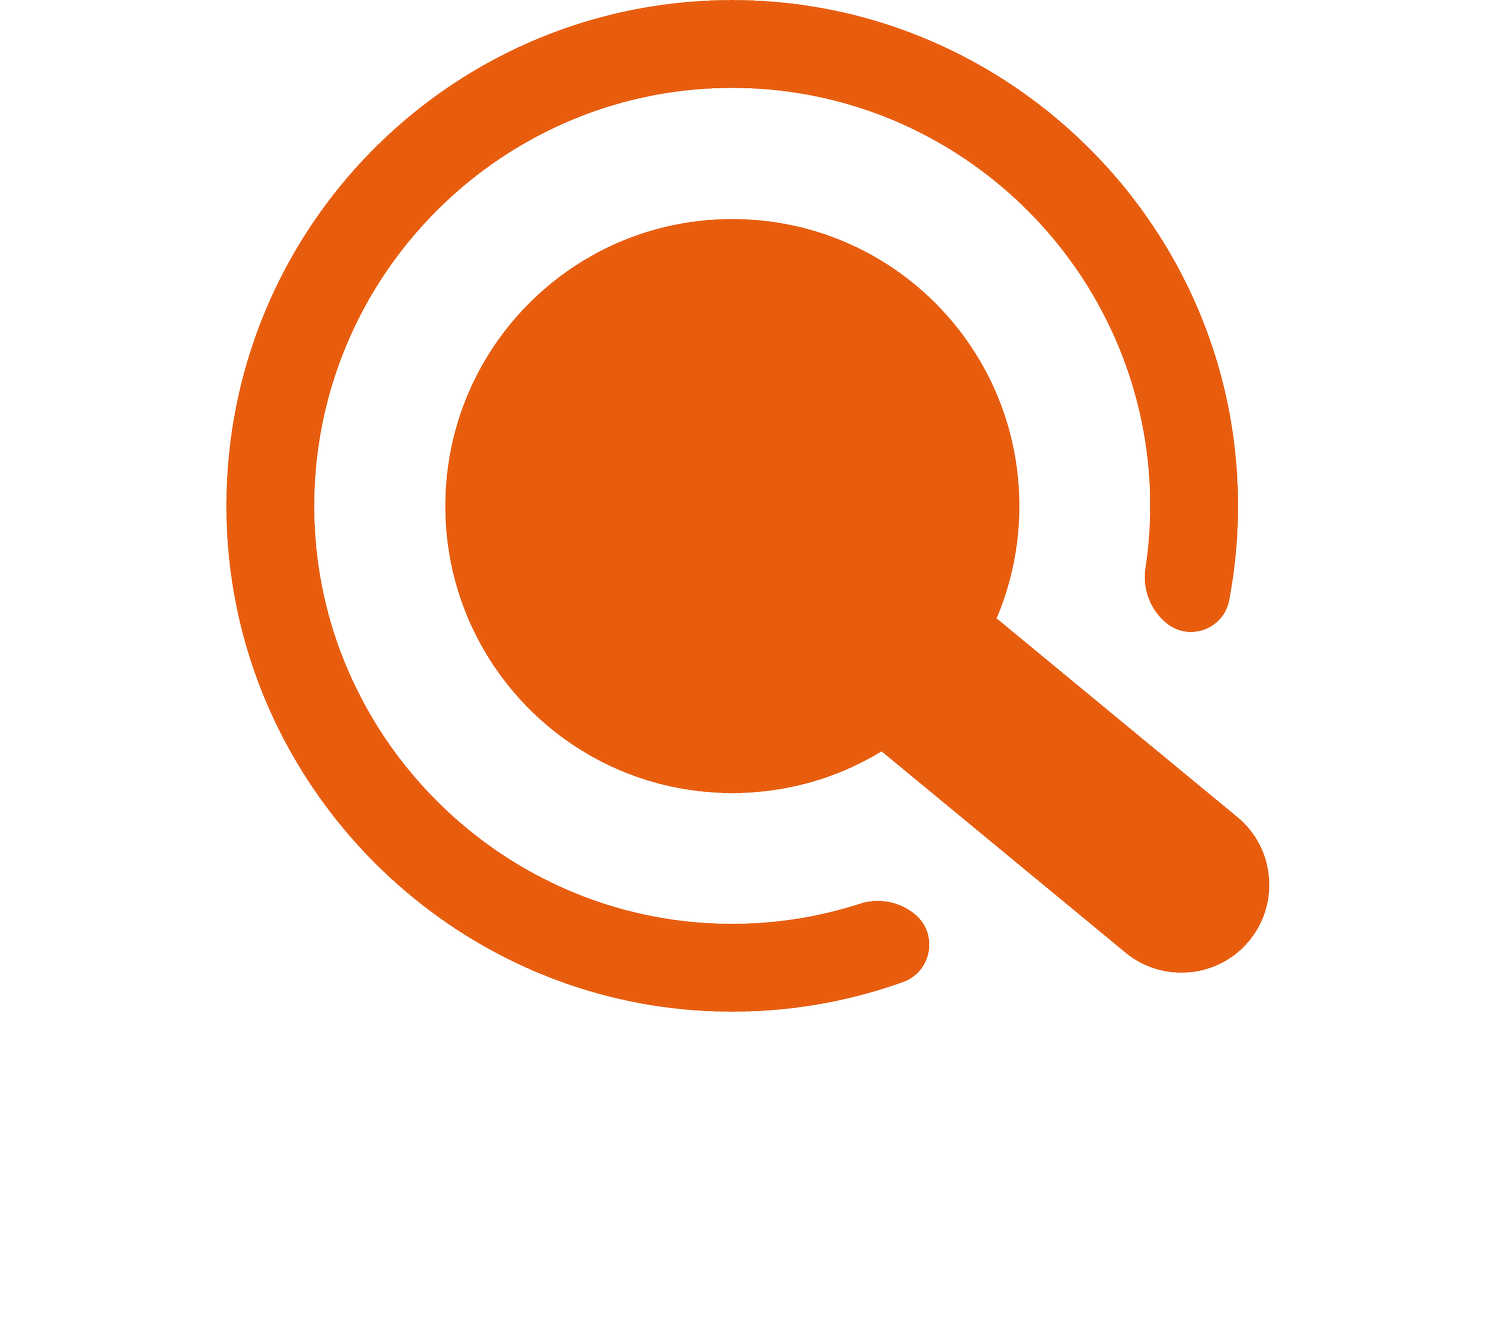 Capture Quests